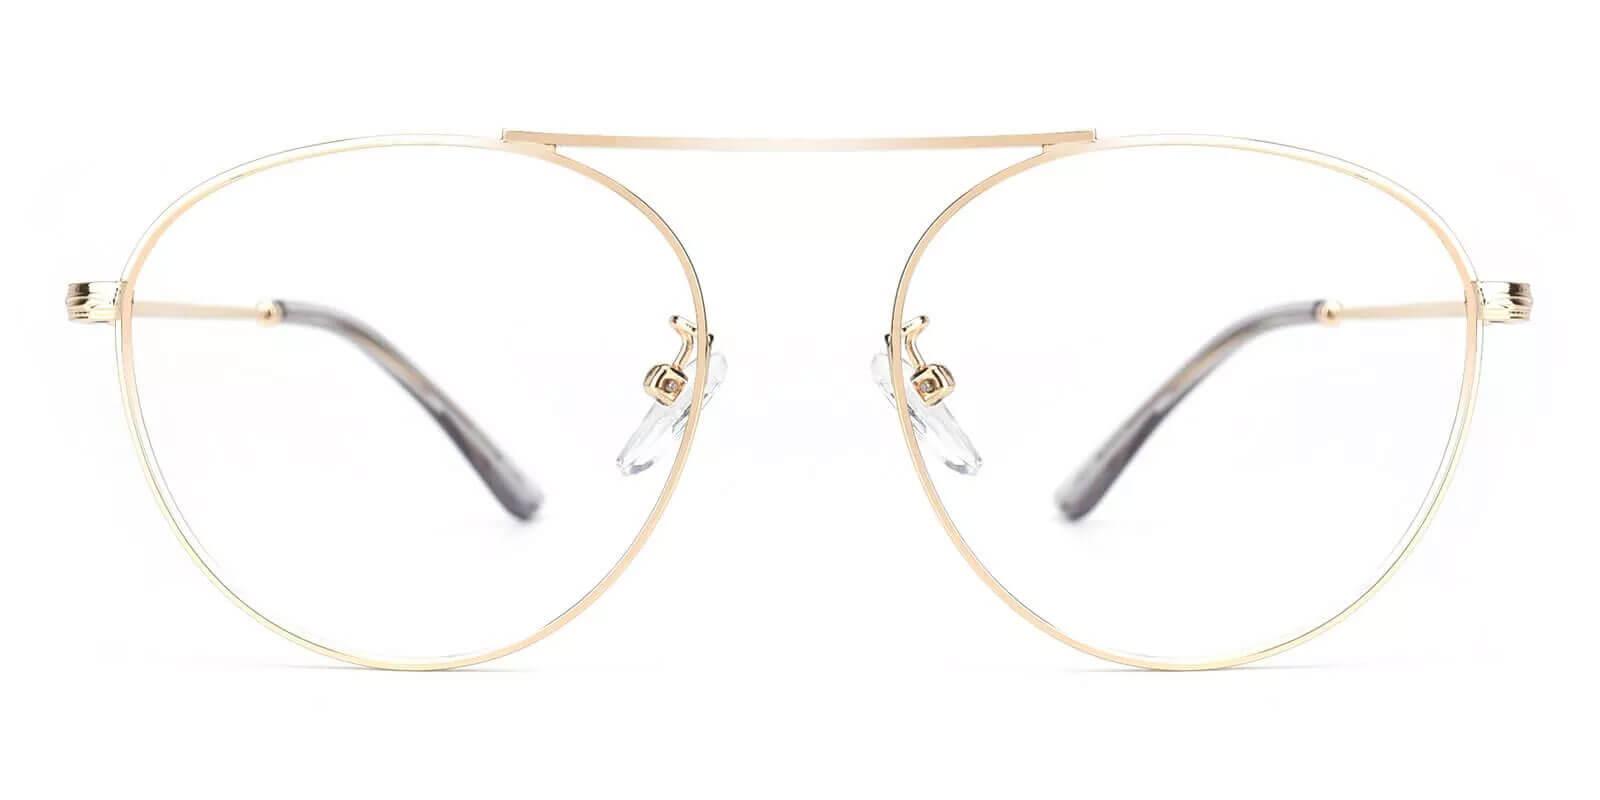 Chloe Gold Metal Eyeglasses , NosePads Frames from ABBE Glasses